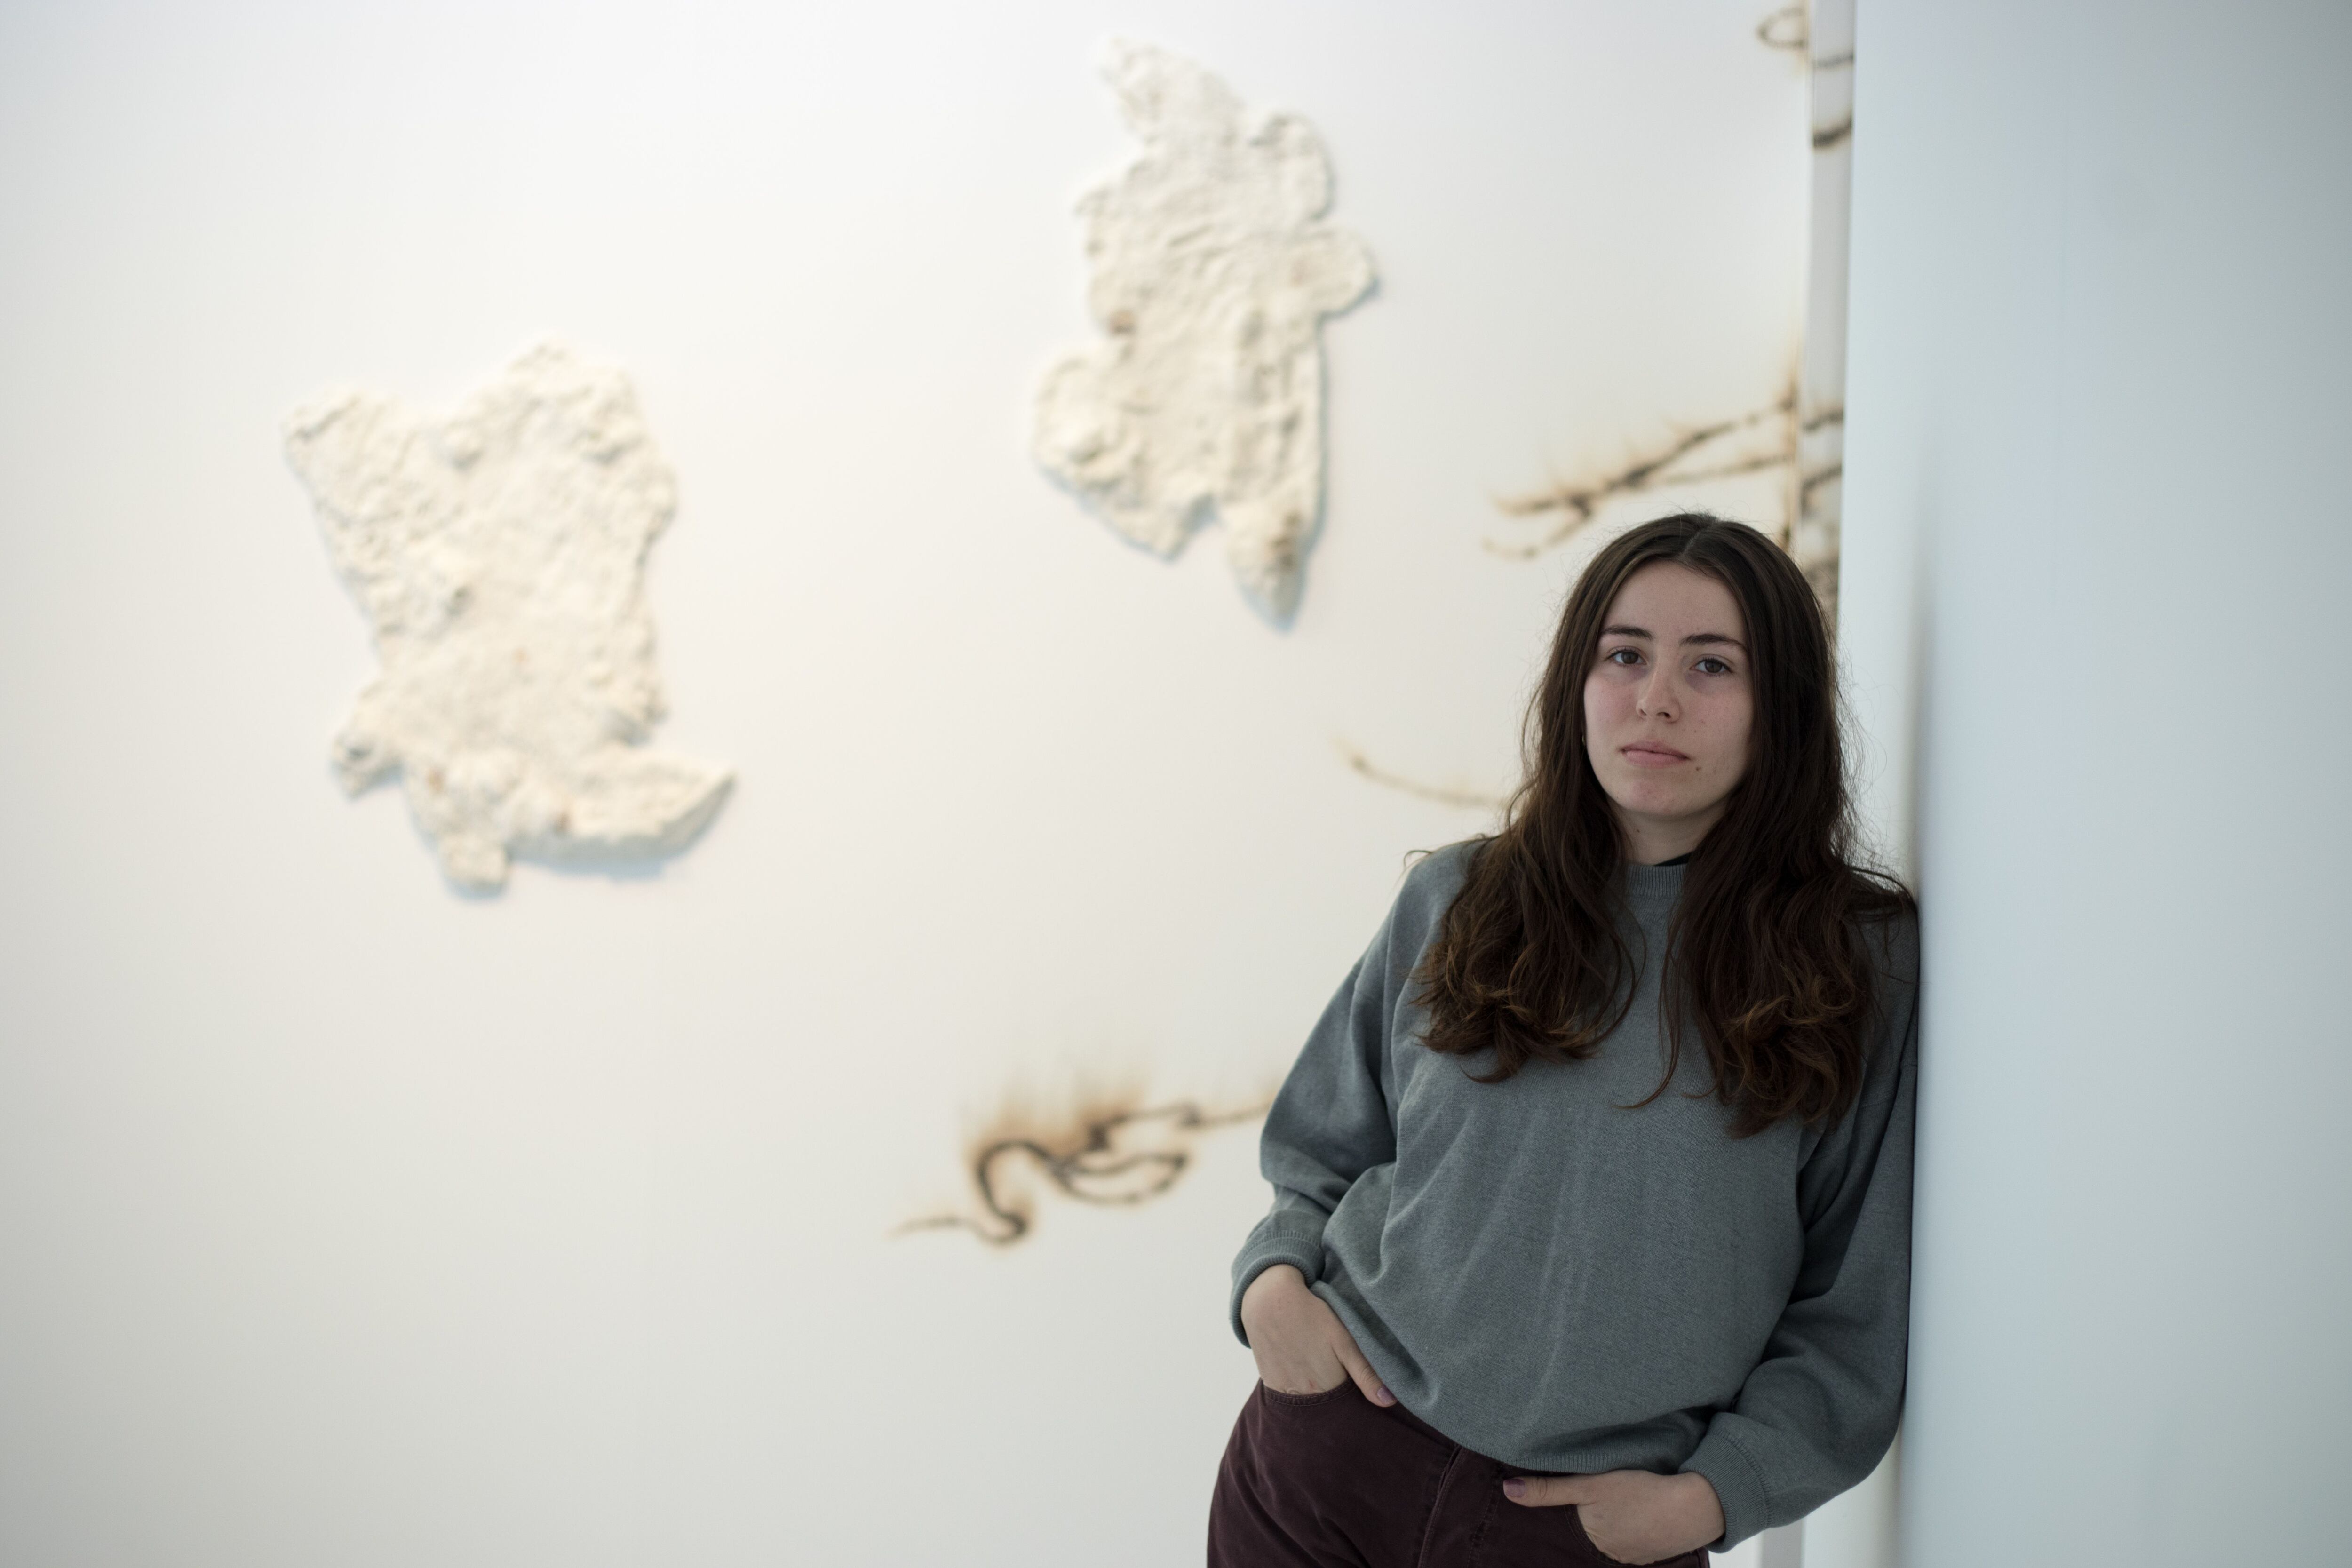 La artista Cristina Spinelli frente a una de sus obras en la XXXII edición del Circulo de Artes Plásticas de Madrid.